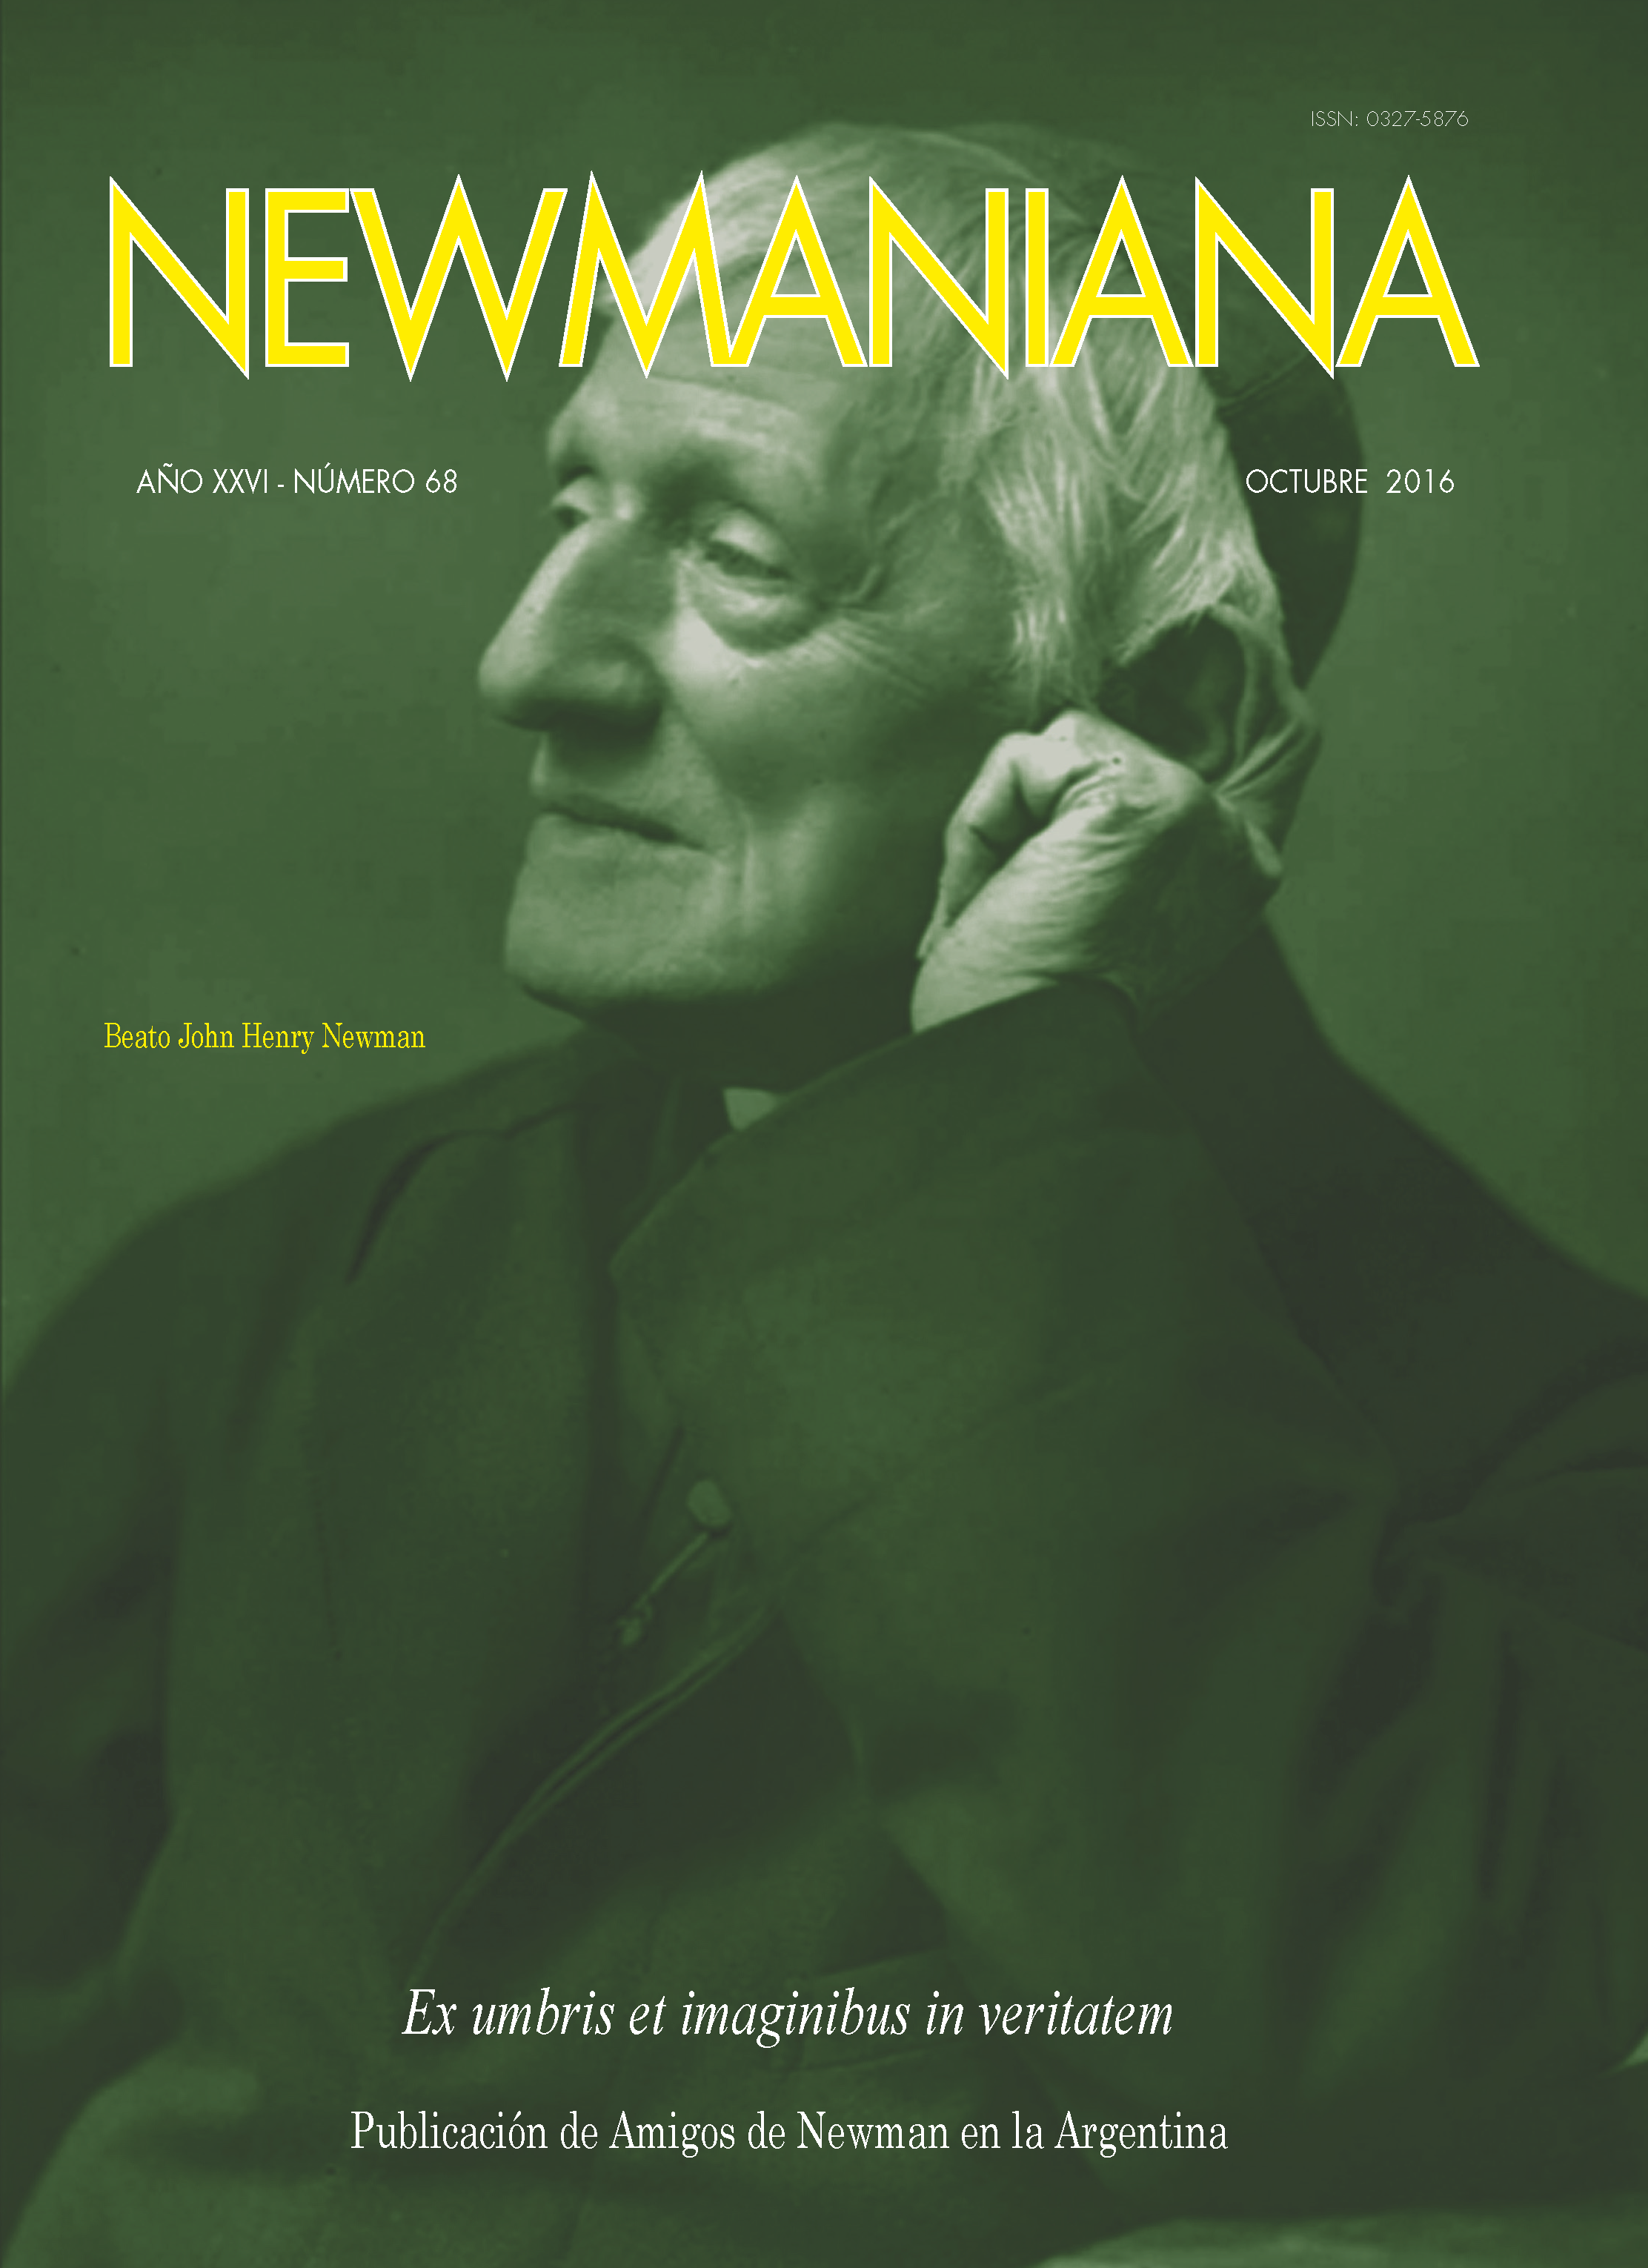 Revista Newmaniana N°68 – Octubre 2016